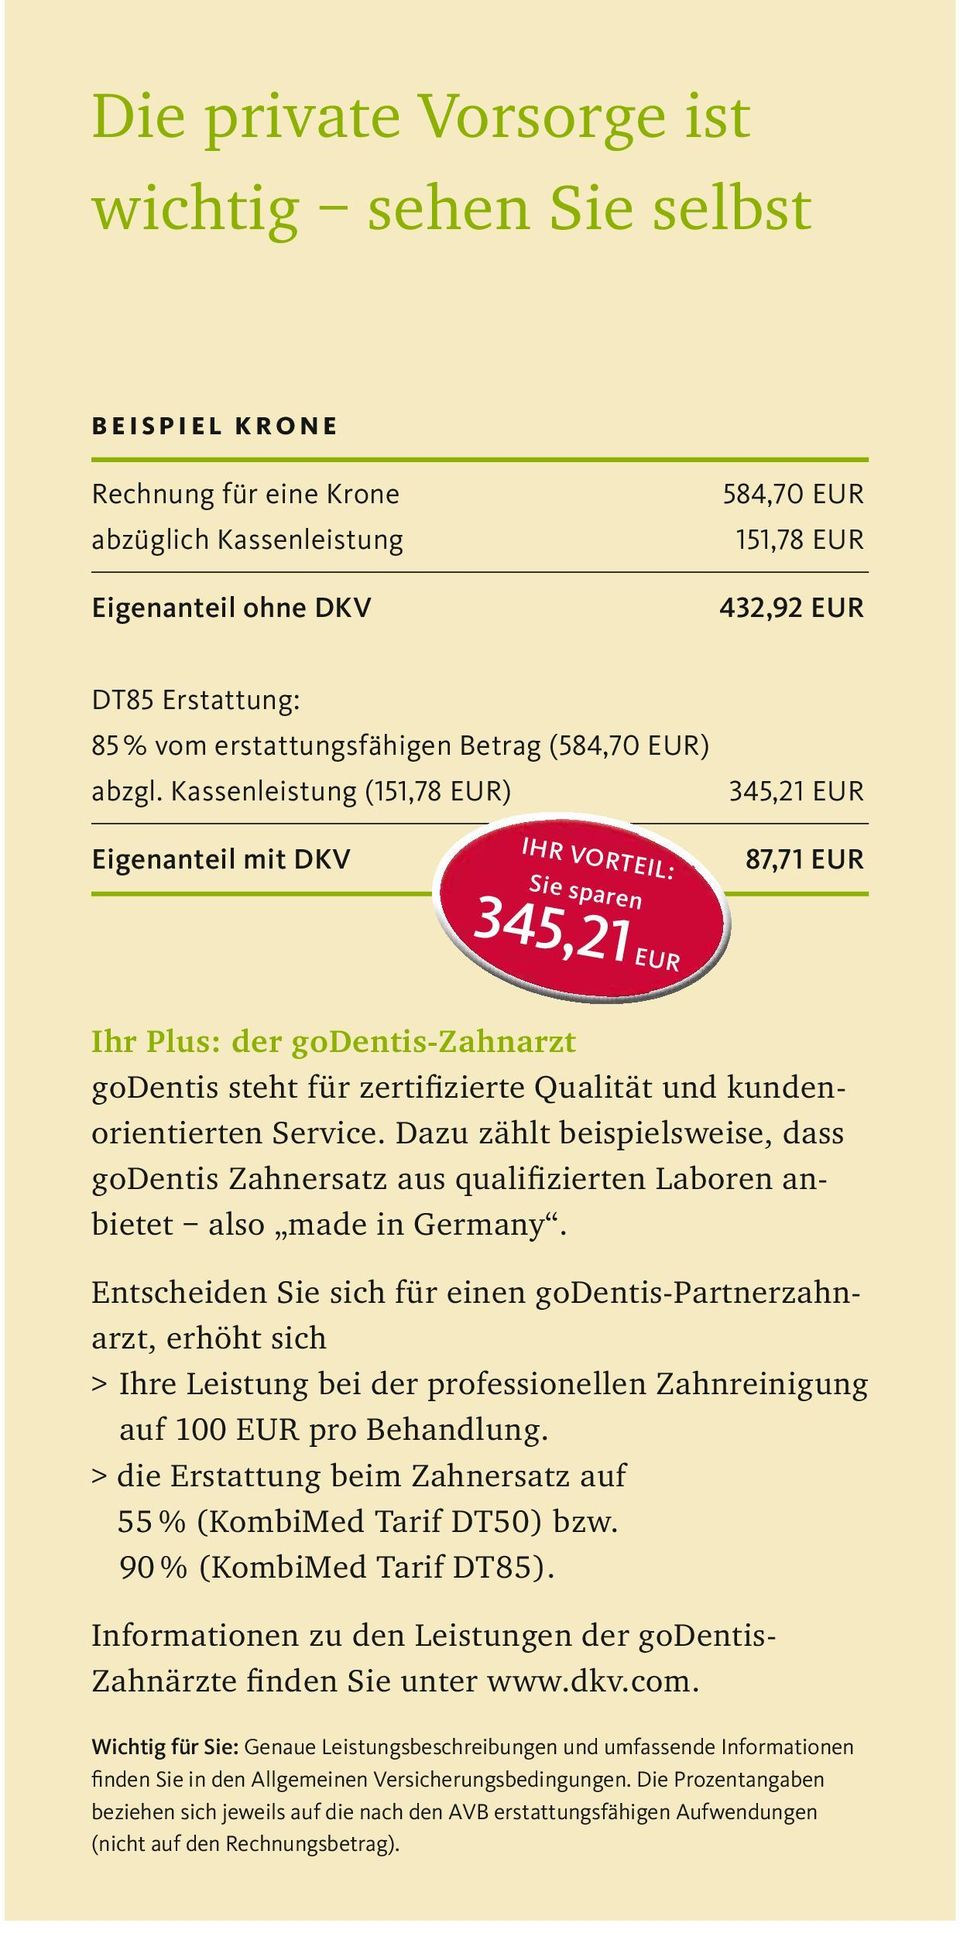 Kassenleistung (151,78 EUR) 345,21 EUR Eigenanteil mit DKV IHR VORTEIL: Sie sparen 345,21 EUR 87,71 EUR Ihr Plus: der godentis-zahnarzt godentis steht für zertifizierte Qualität und